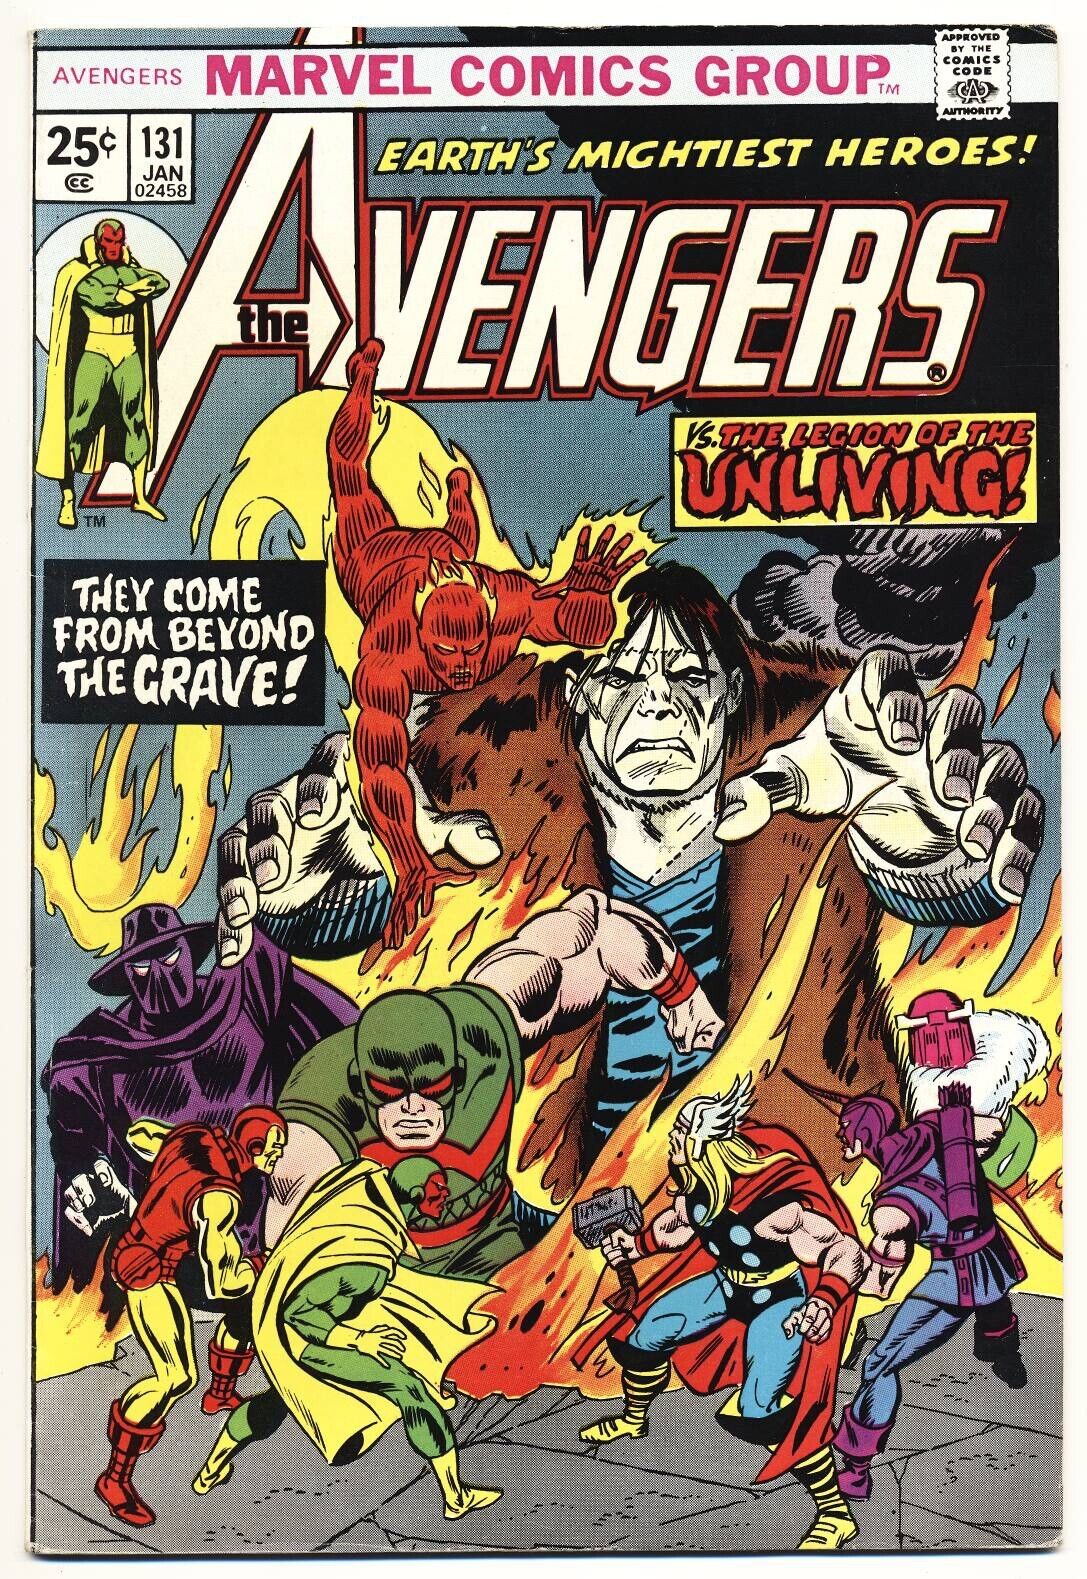 AVENGERS #131 VG, Marvel Comics 1974 Stock Image